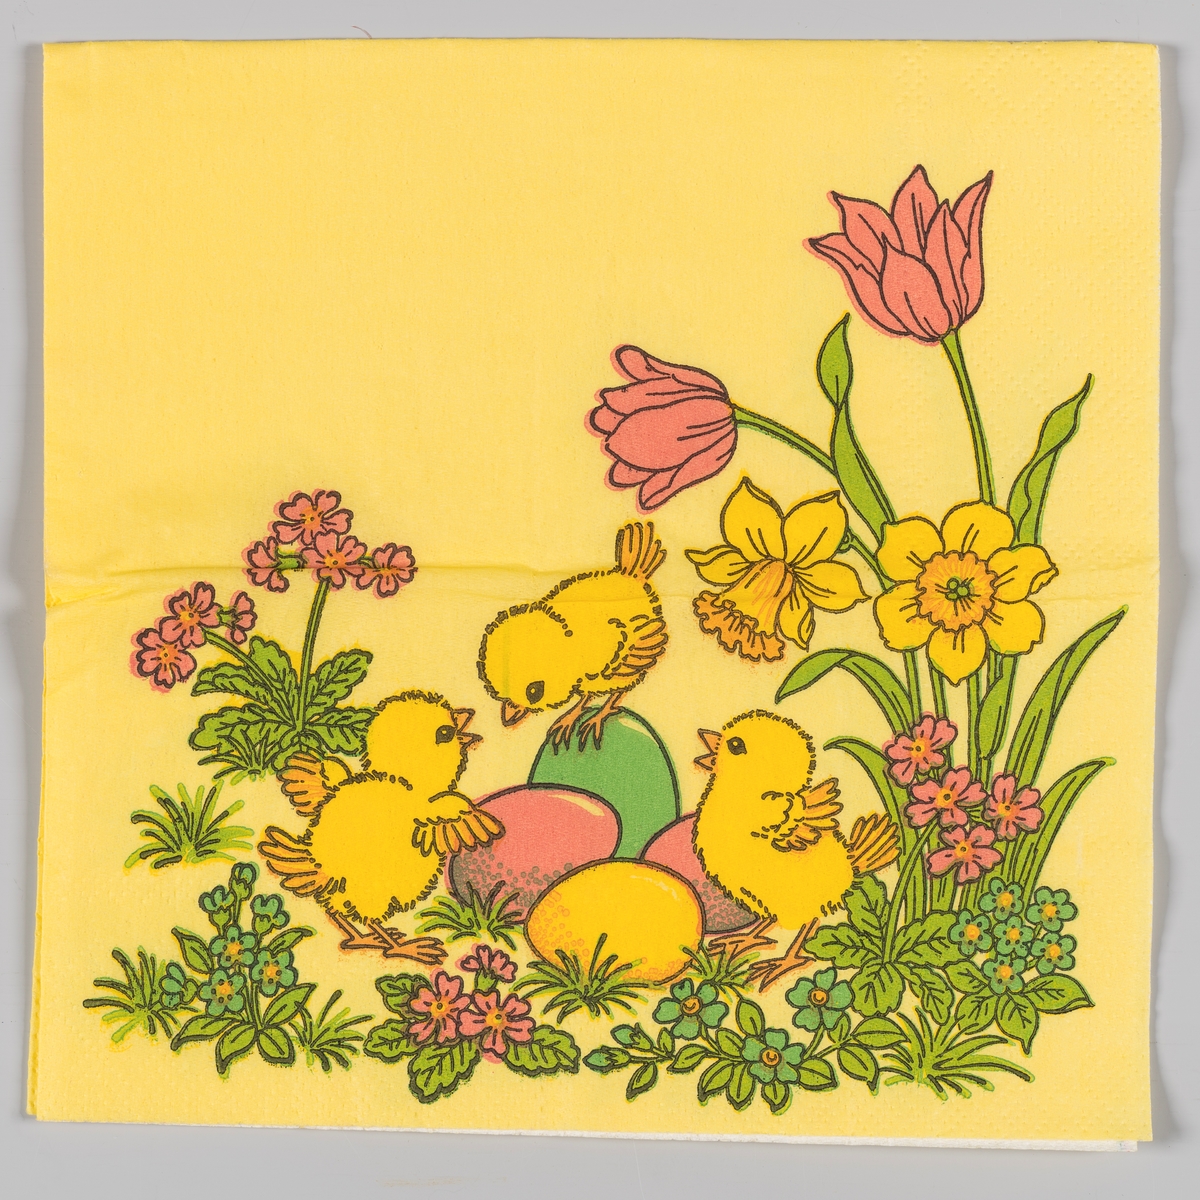 Tre kyllinger og kulørte påskeegg mellom tulipaner, påskeliljer og små blomster.